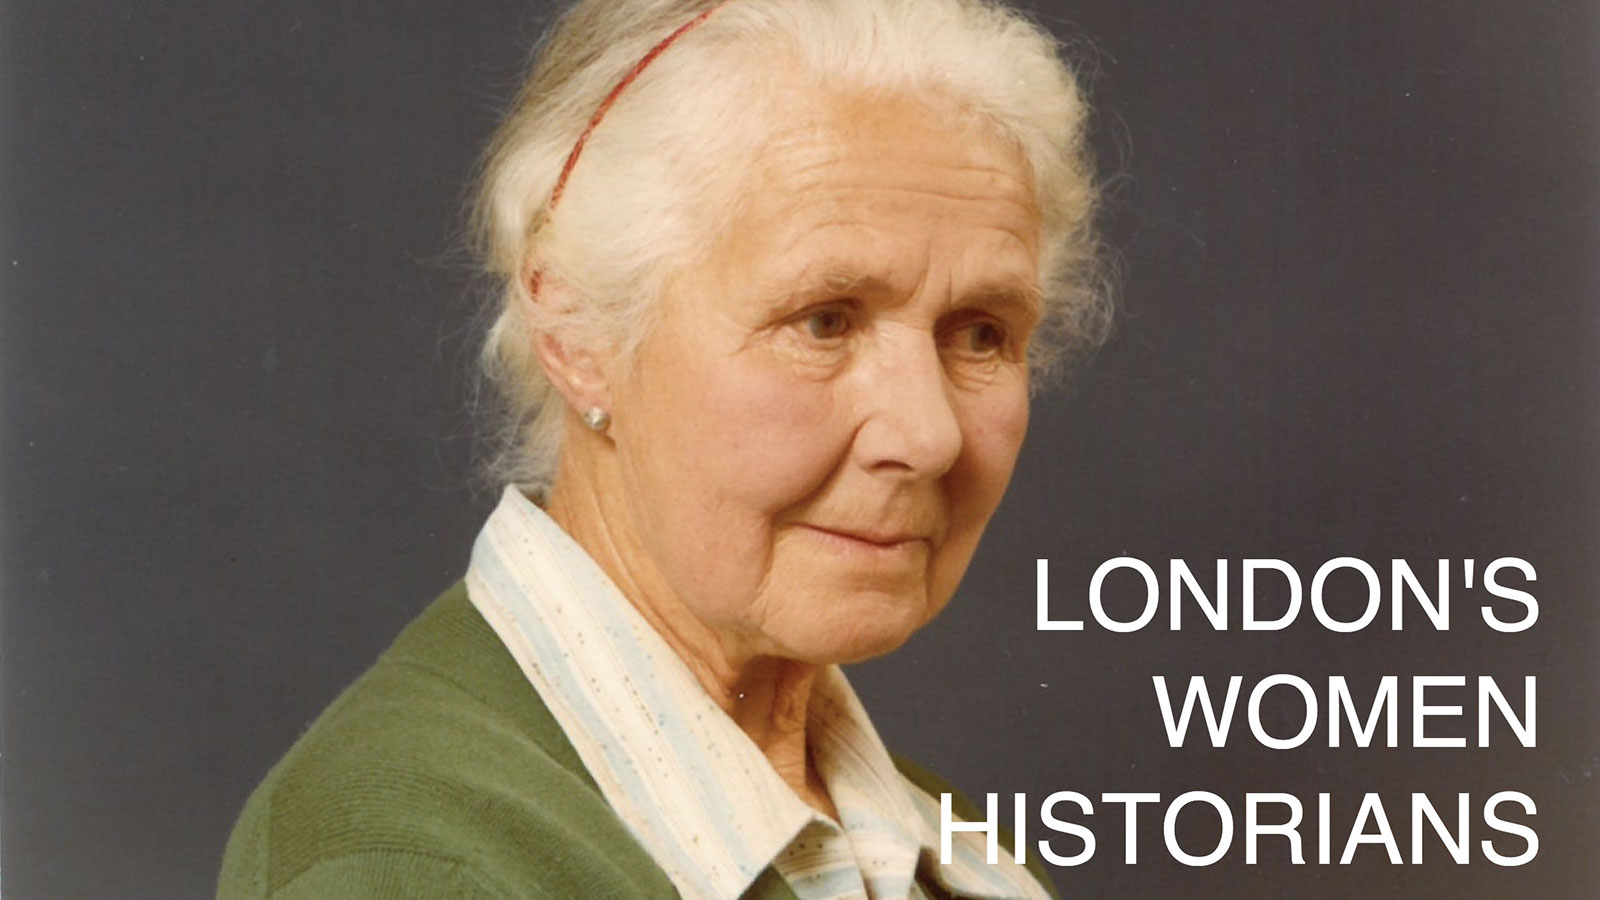 London's Women Historians